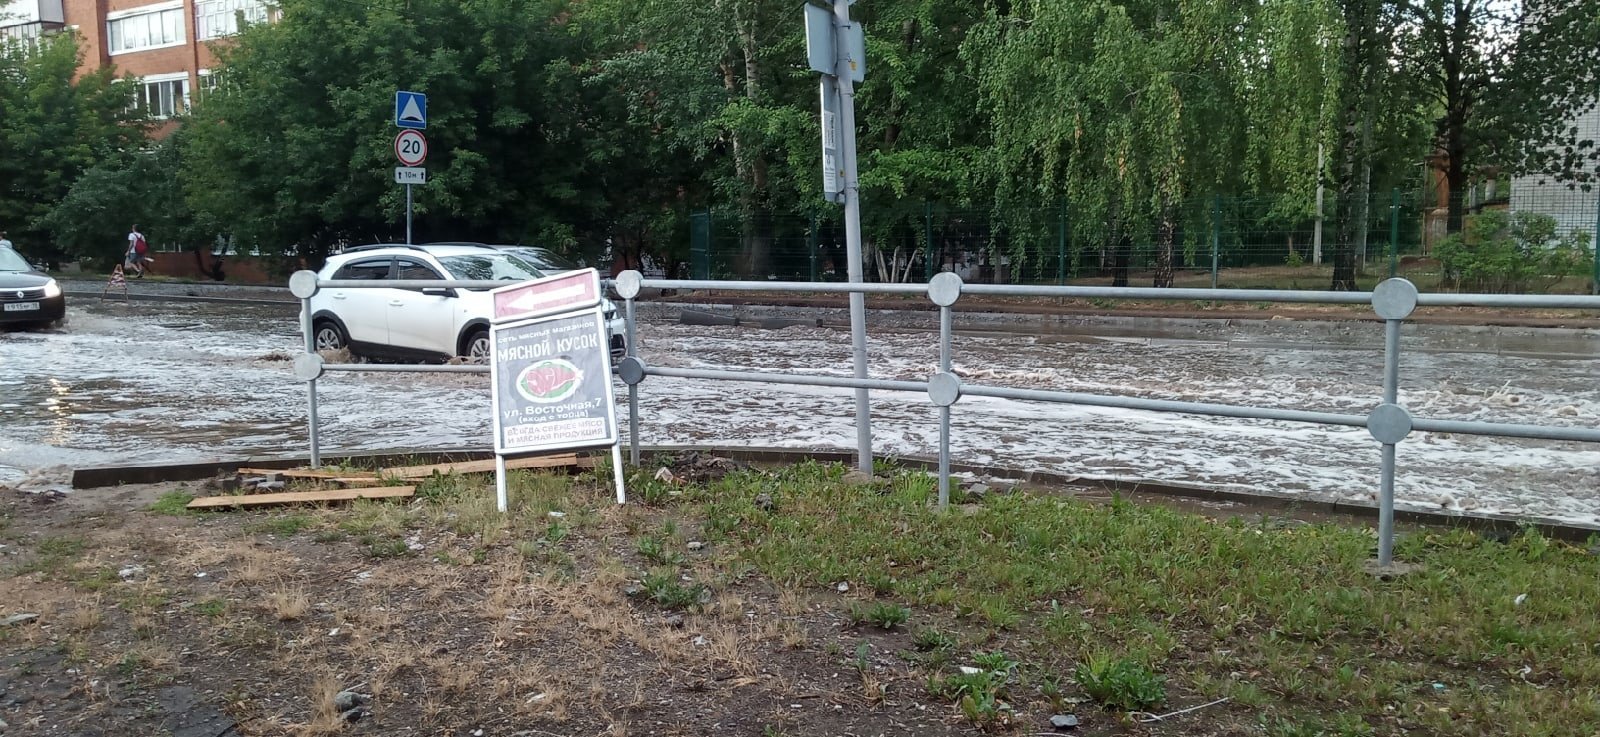 

Из-за продолжительного дождя в Ижевске затопило улицу Восточную

